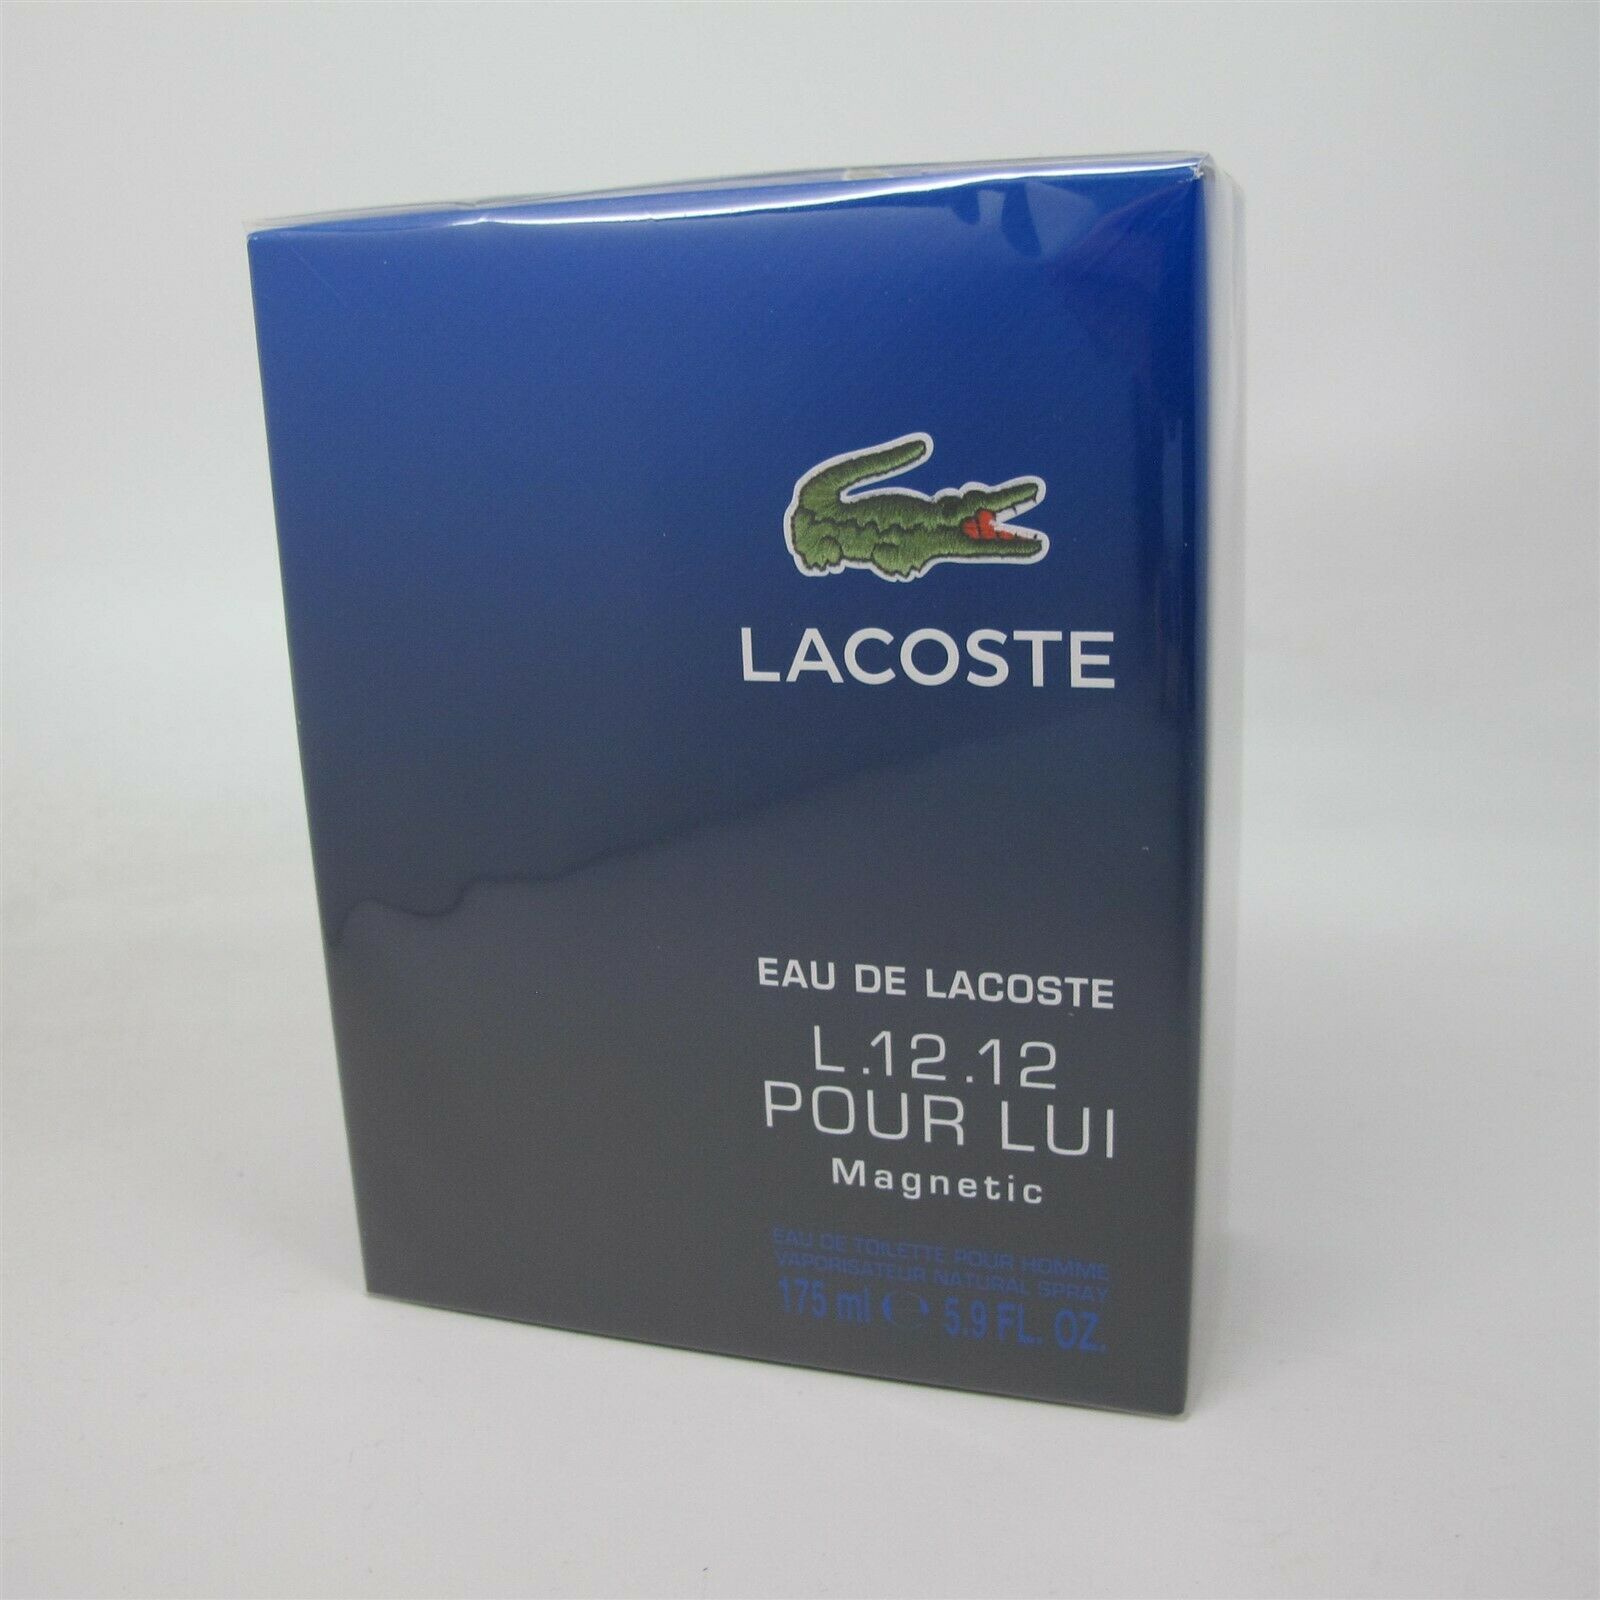 Primary image for Eau de Lacoste L.12.12 Magnetic by Lacoste 175 ml/5.9 oz Eau de Toilette Spray